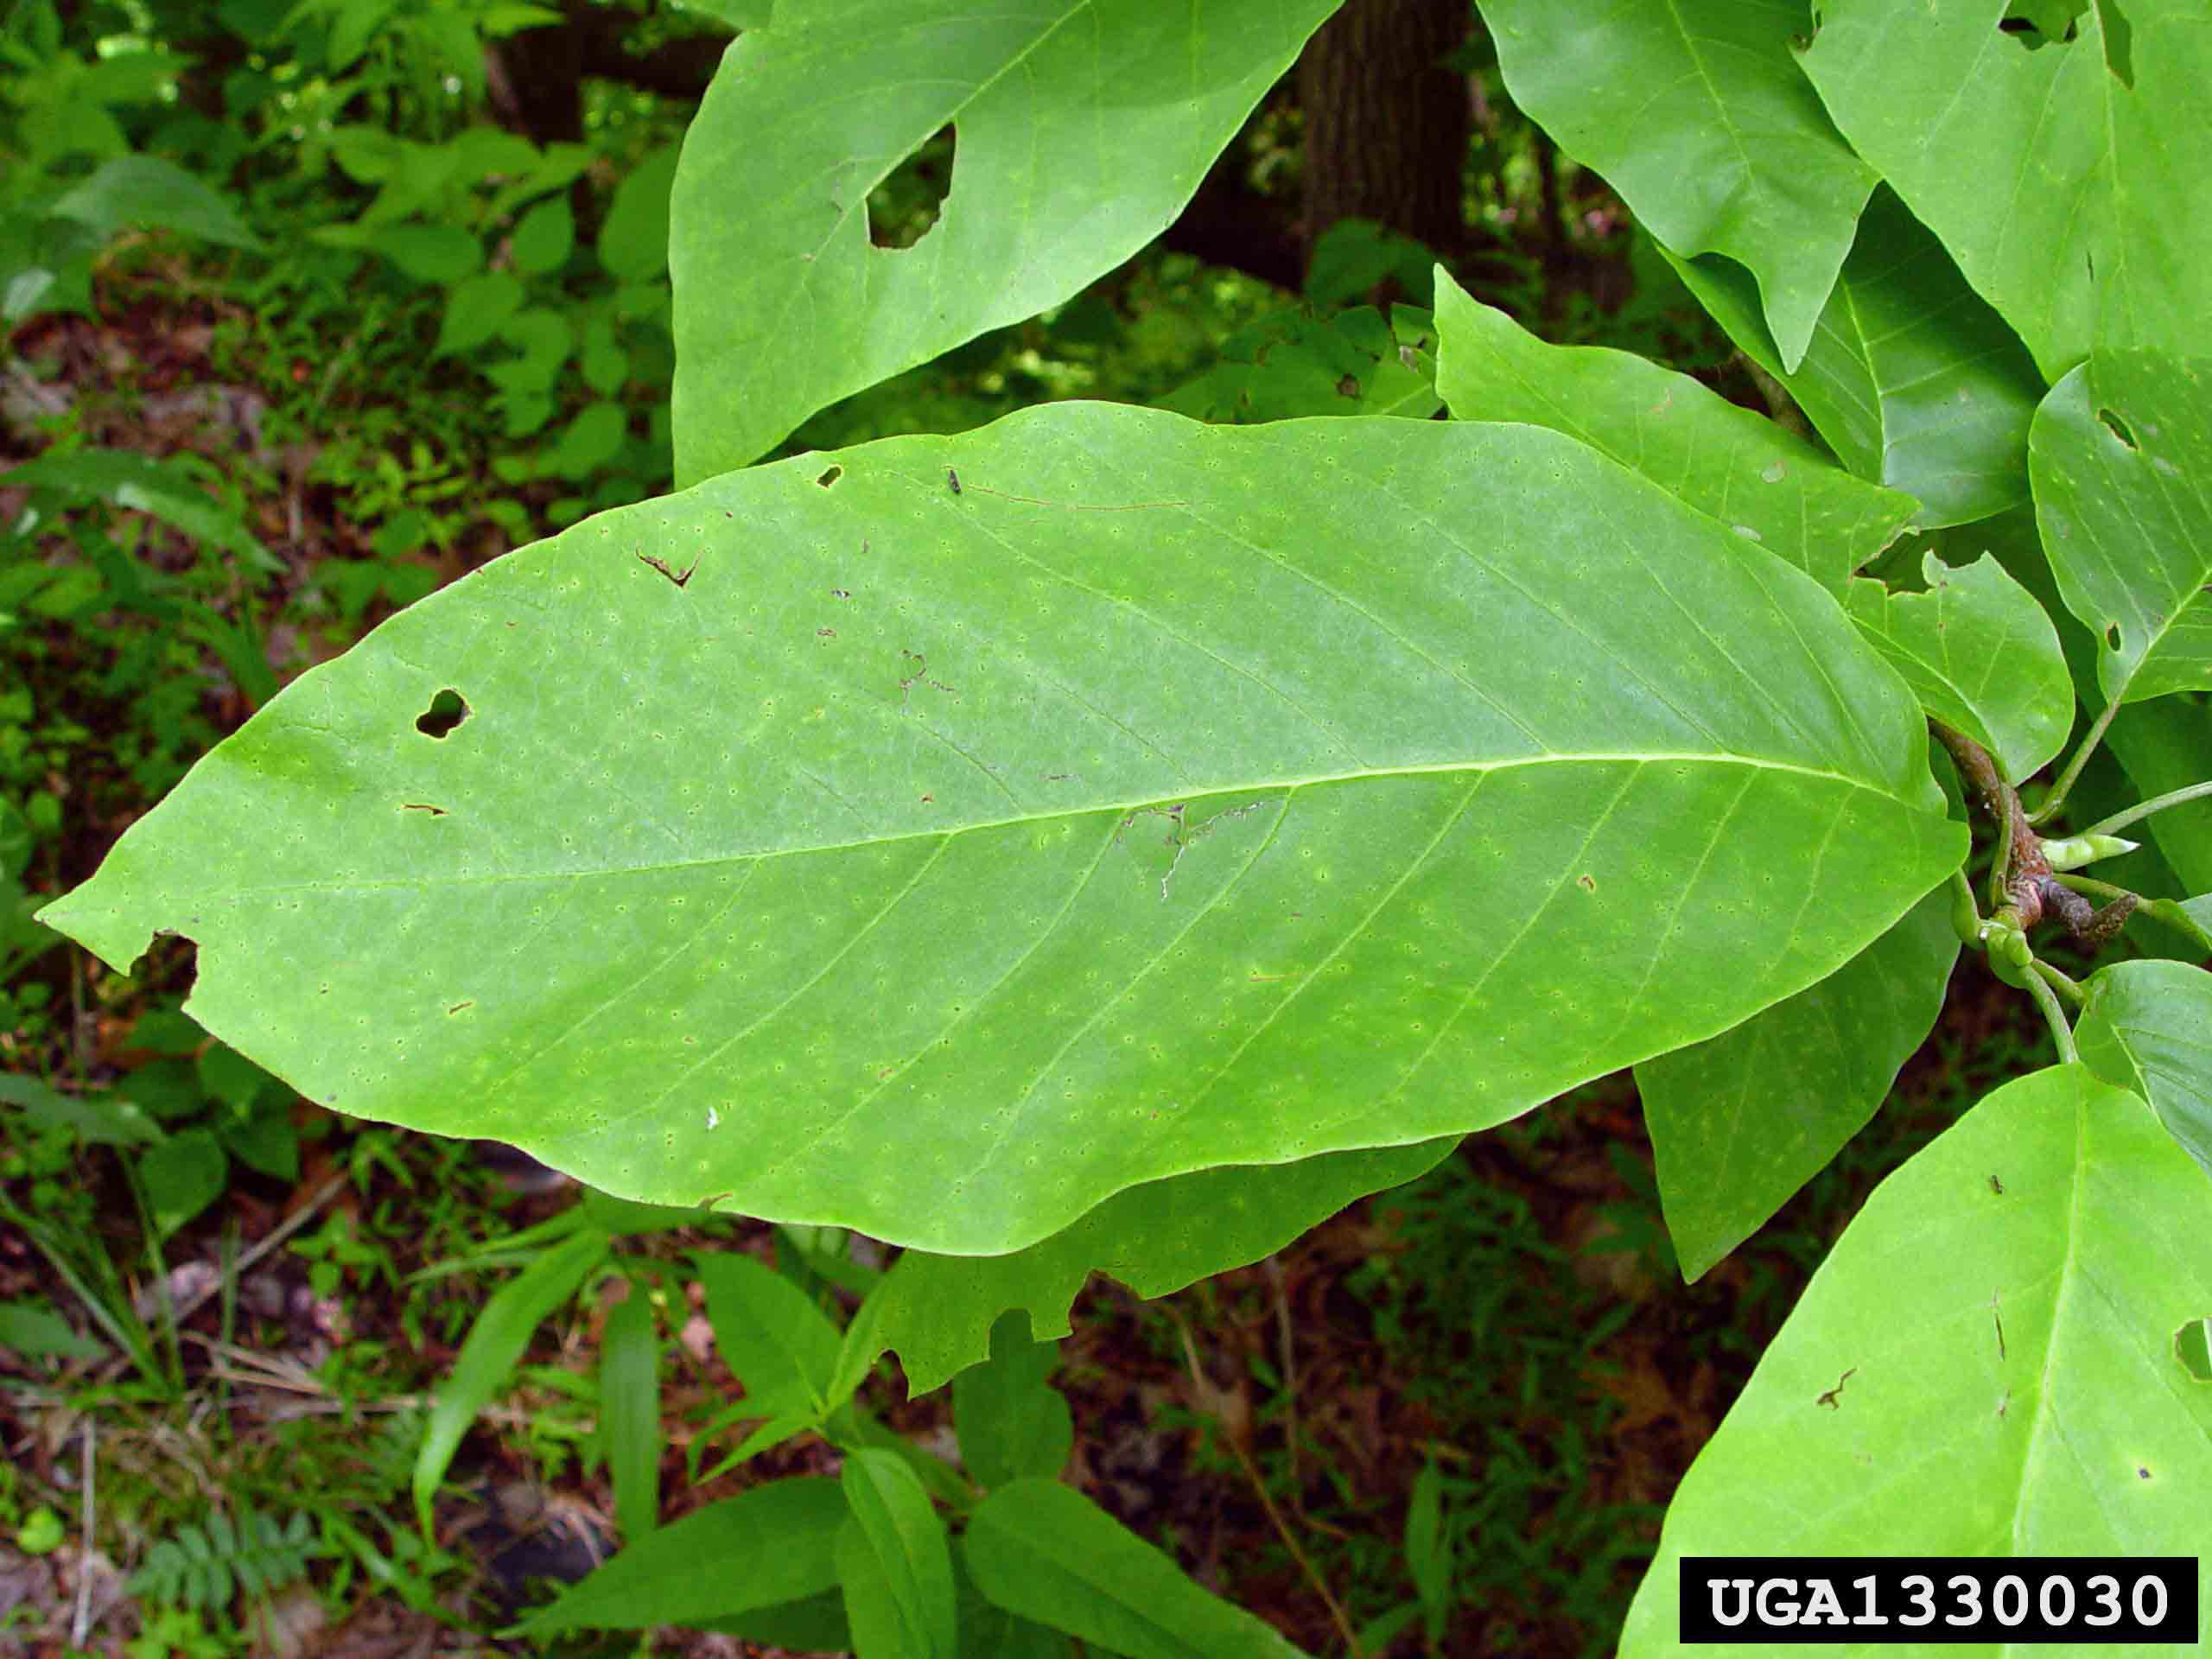 Cucumber tree leaf, 6"-10" long